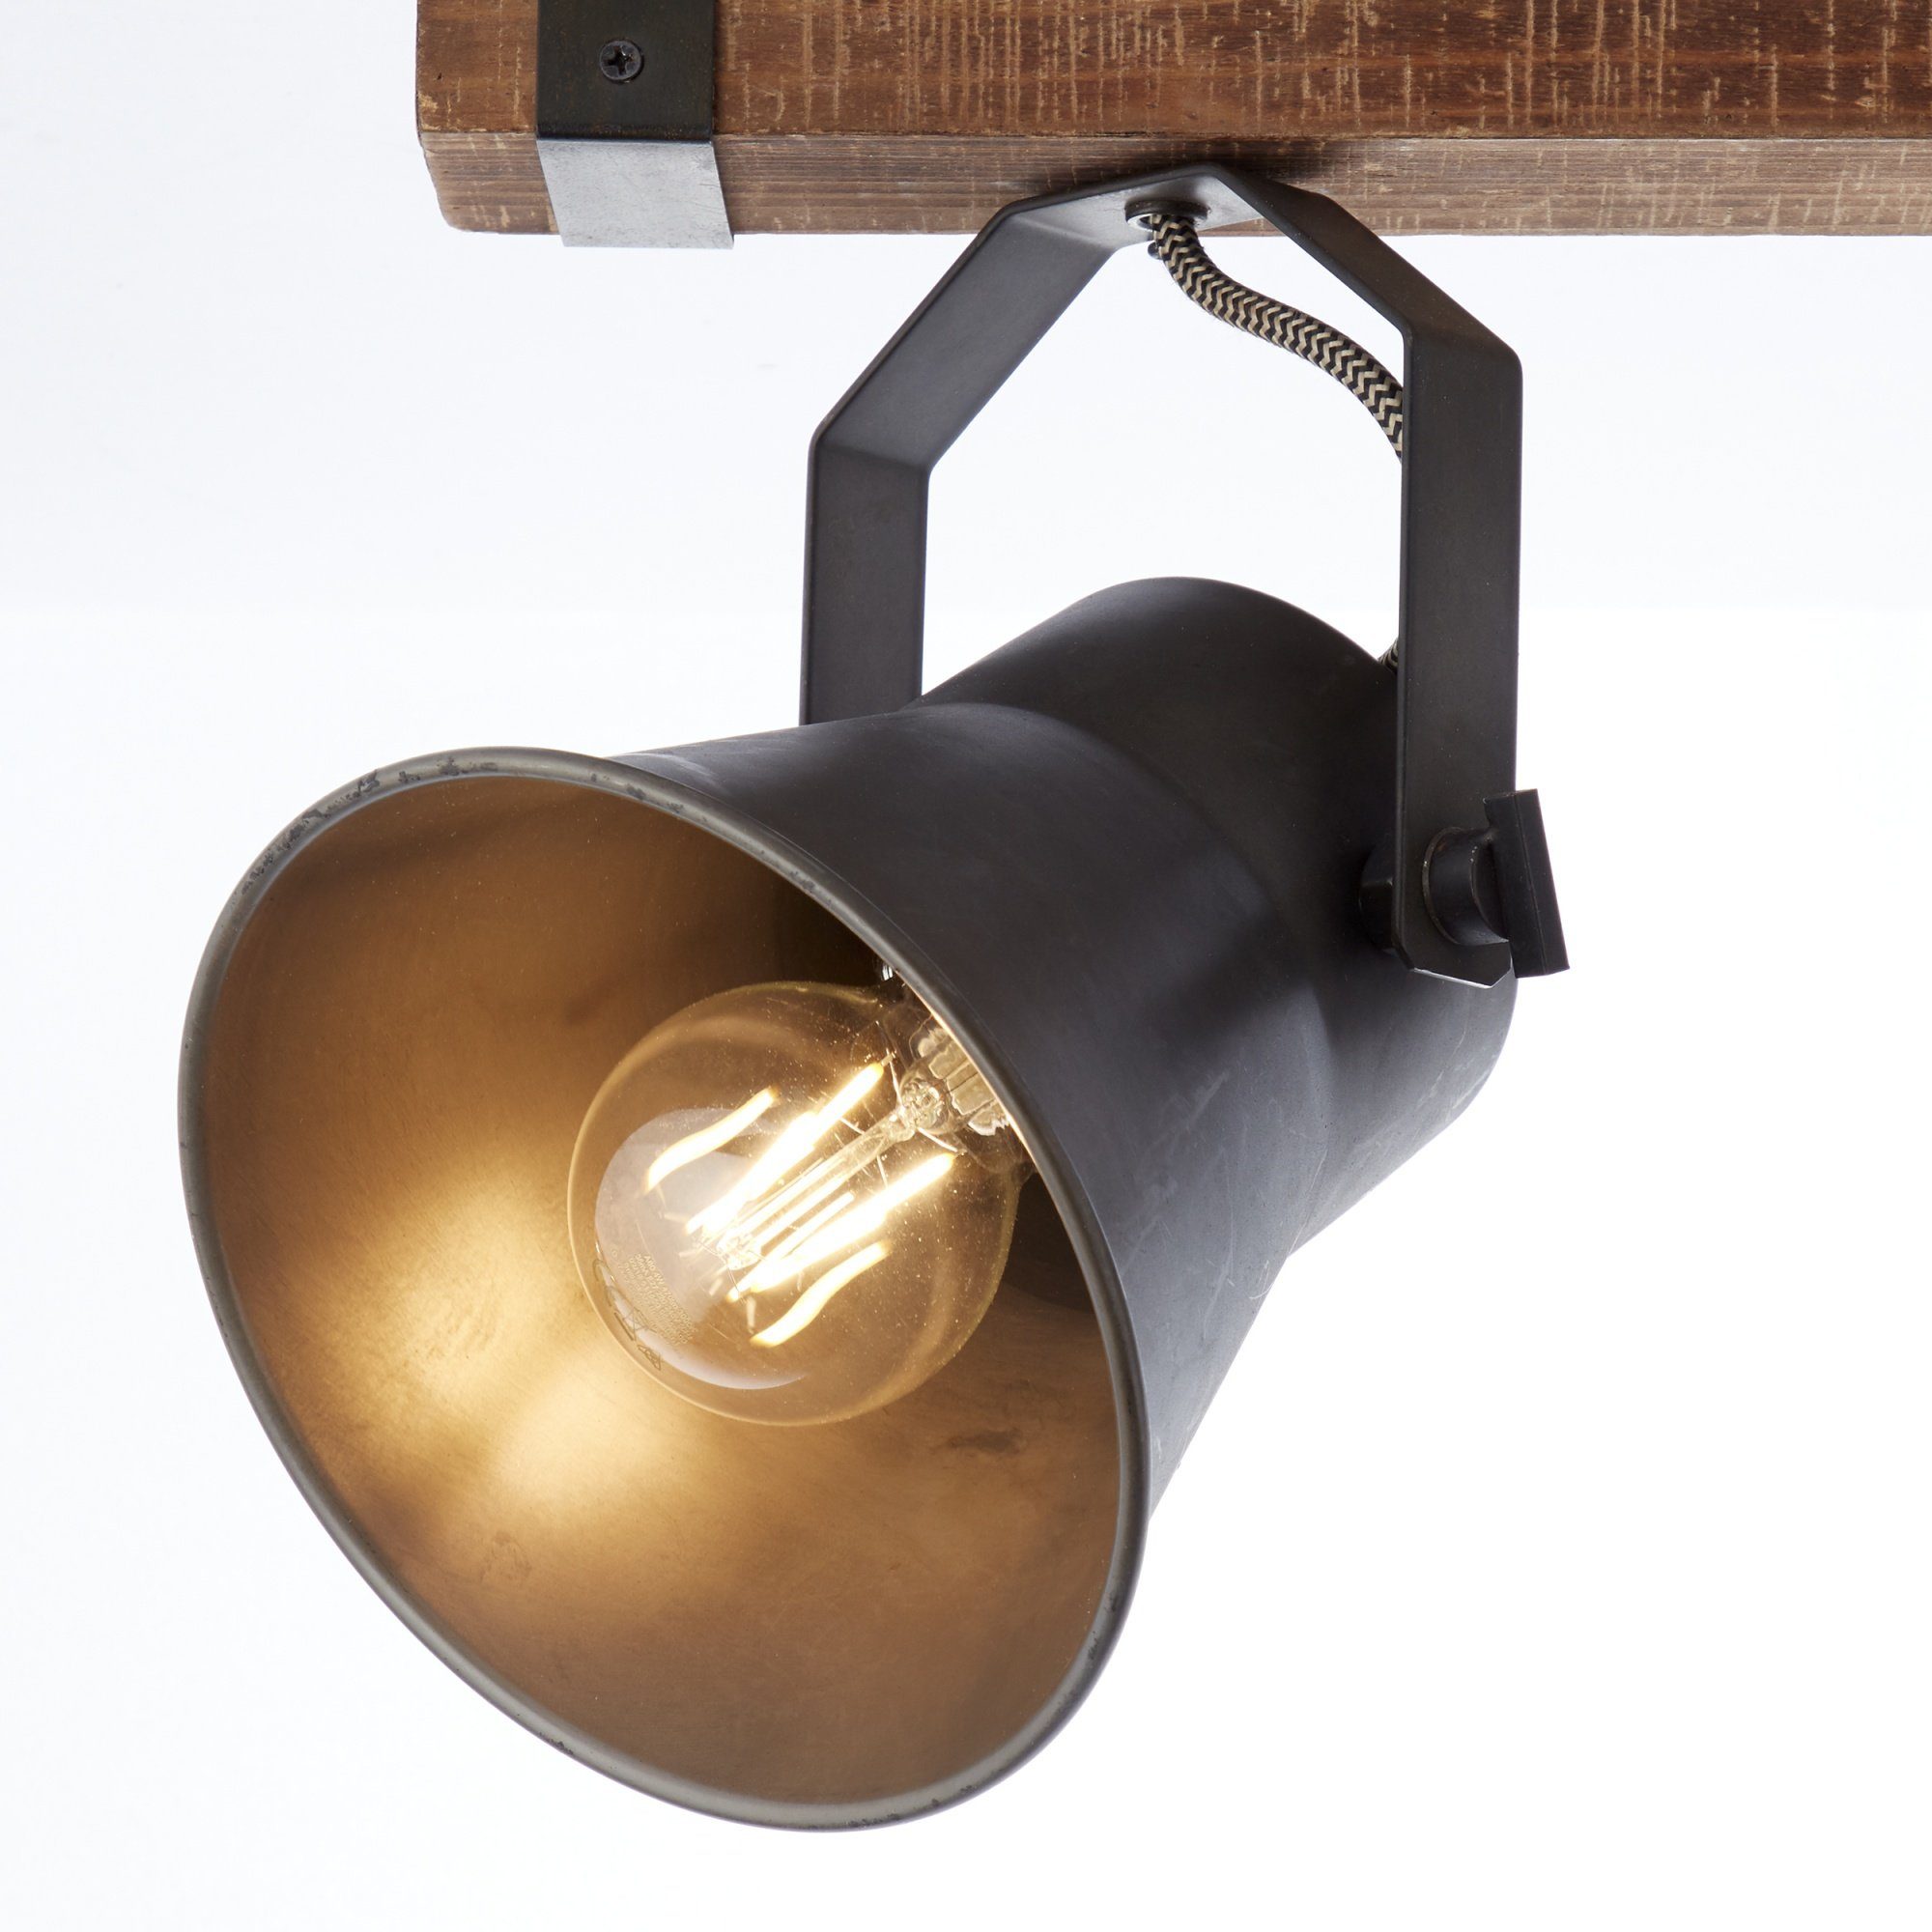 Breite, 40cm Leuchtmittel, Metall/Holz 2-flammiger schwenkbar, ohne Deckenstrahler, Köpfe Deckenleuchte, Lightbox